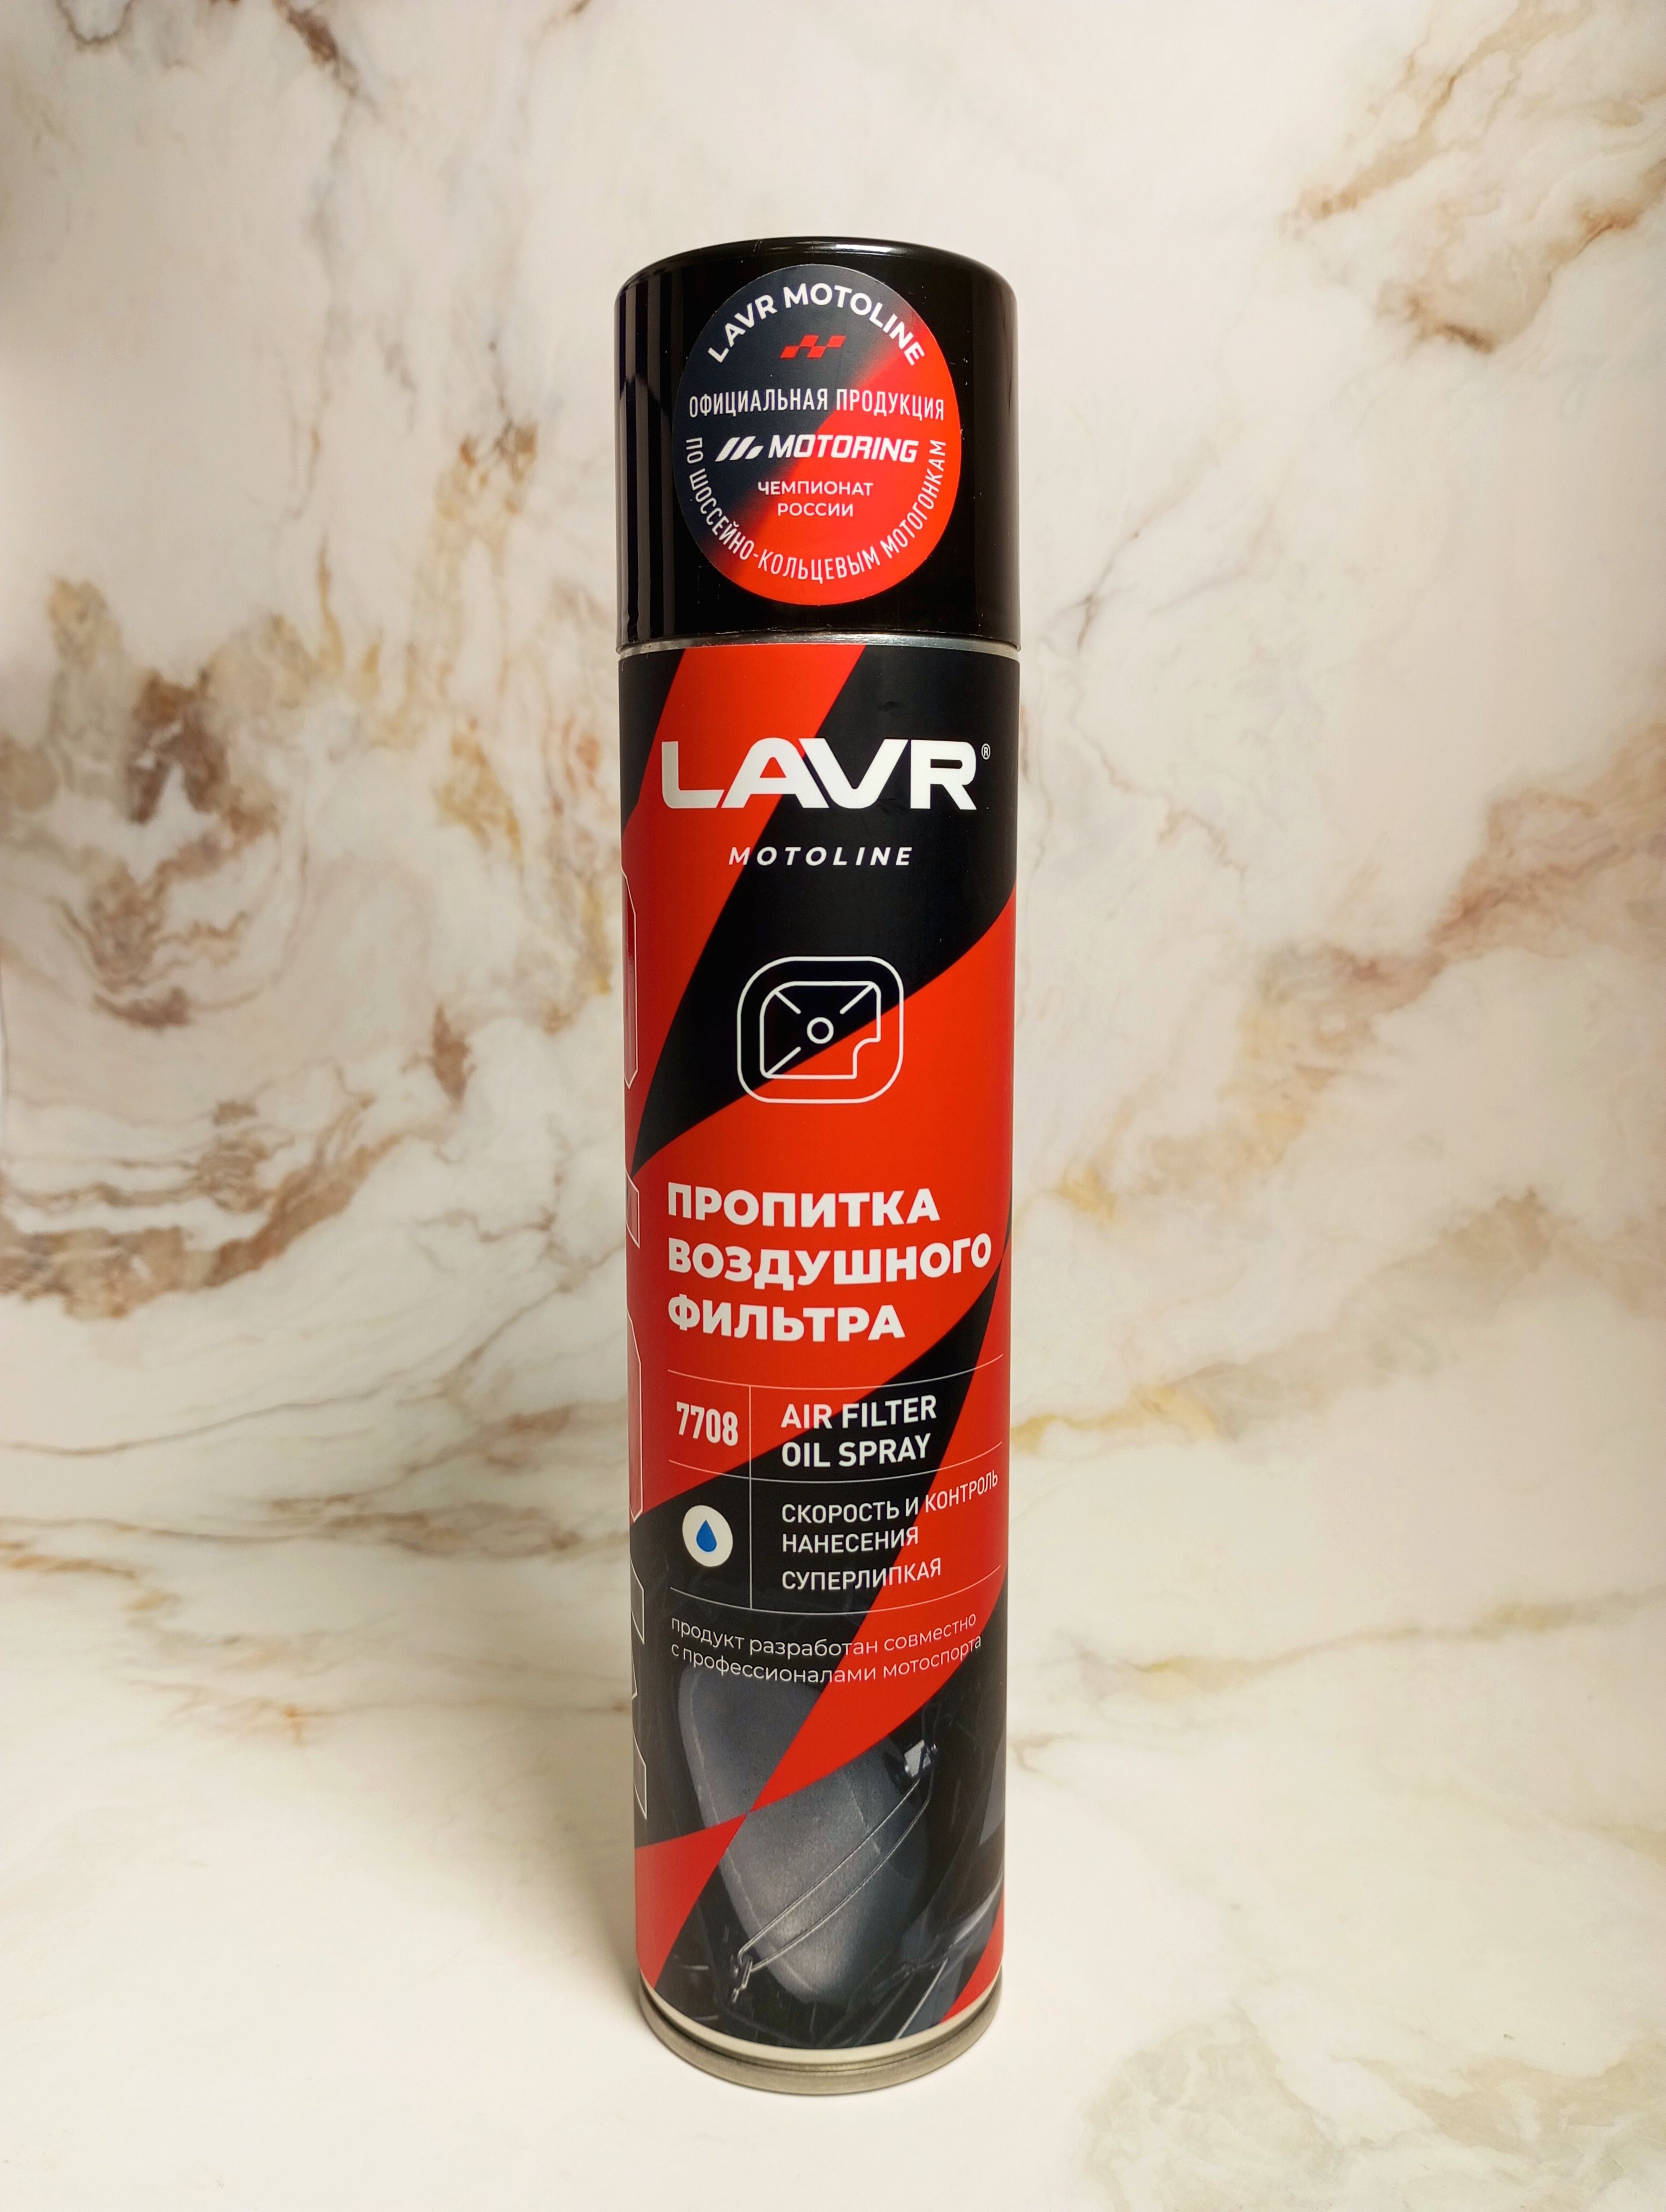 LAVR Motoline Air Filter Oil Spray Пропитка для воздушного фильтра 400 мл